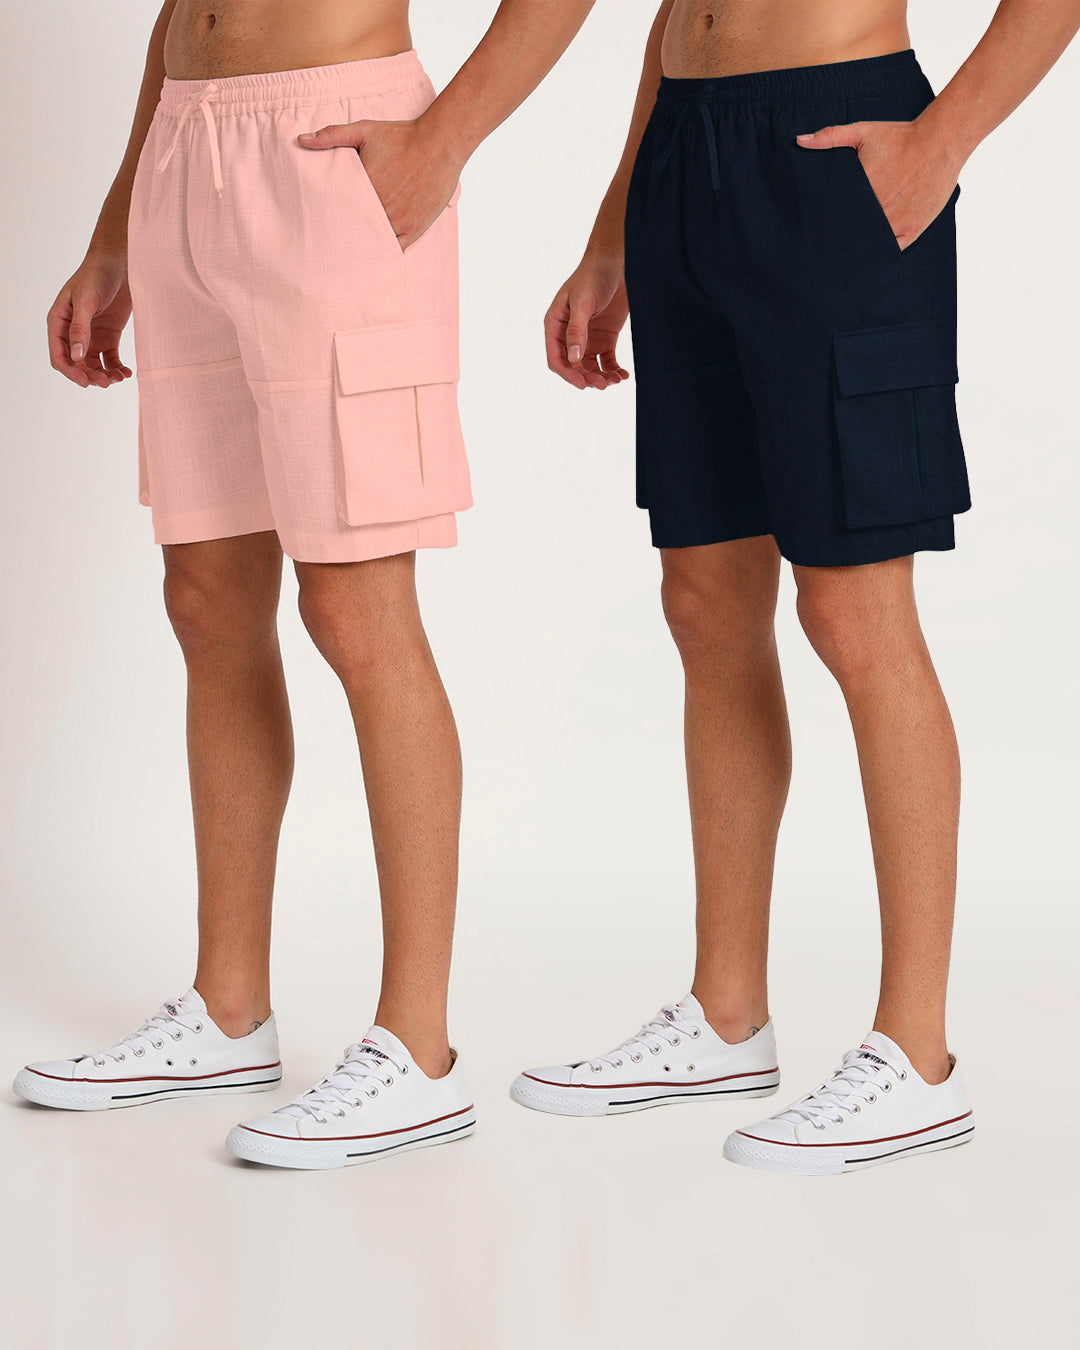 Combo : Slub Comfort Cargo Fondant Pink & Midnight Blue Men's Shorts